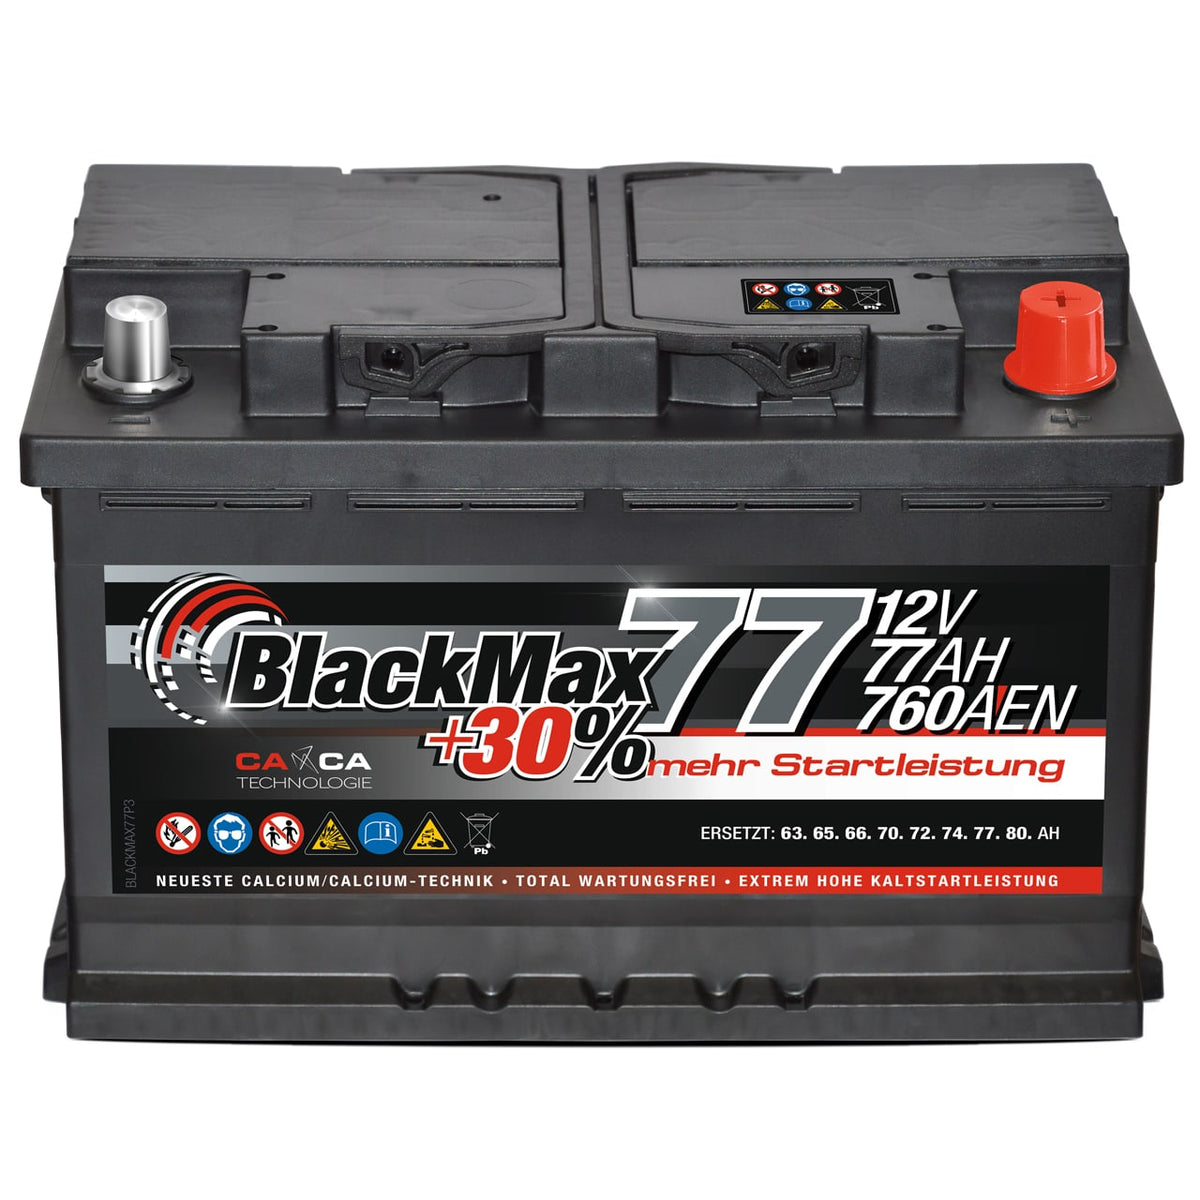 BlackMax +30% 12V 77Ah 760A/EN